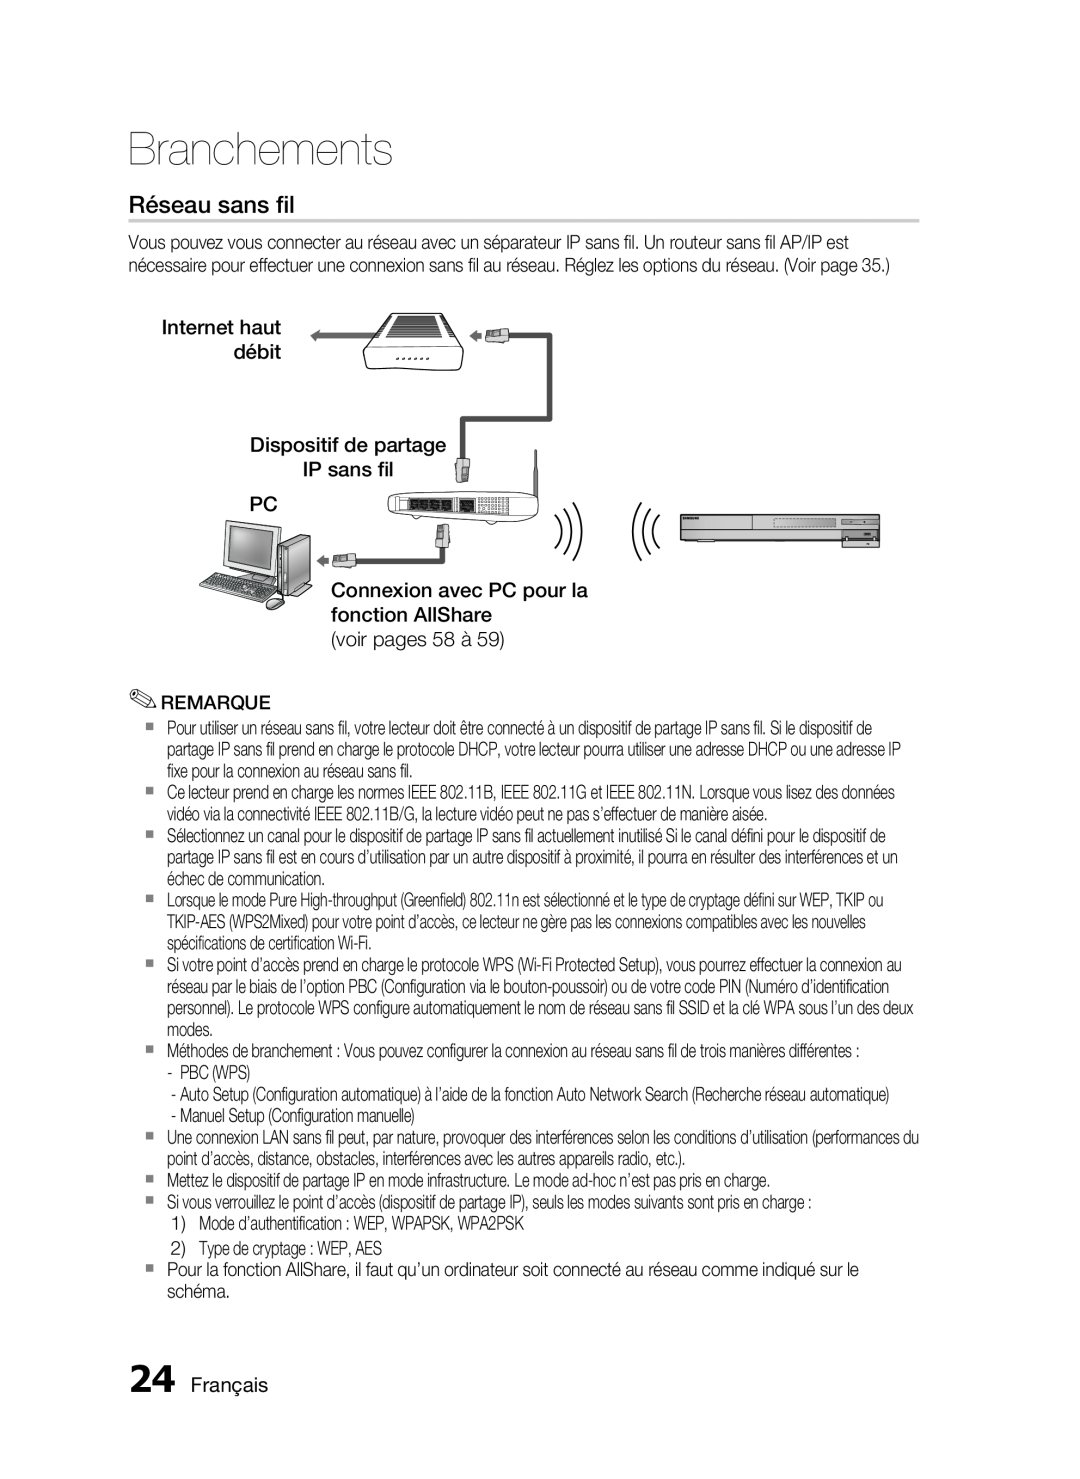 Samsung HT-C6200/XEF manual Réseau sans ﬁl, Internet haut débit Dispositif de partage IP sans ﬁl PC, Français, Branchements 